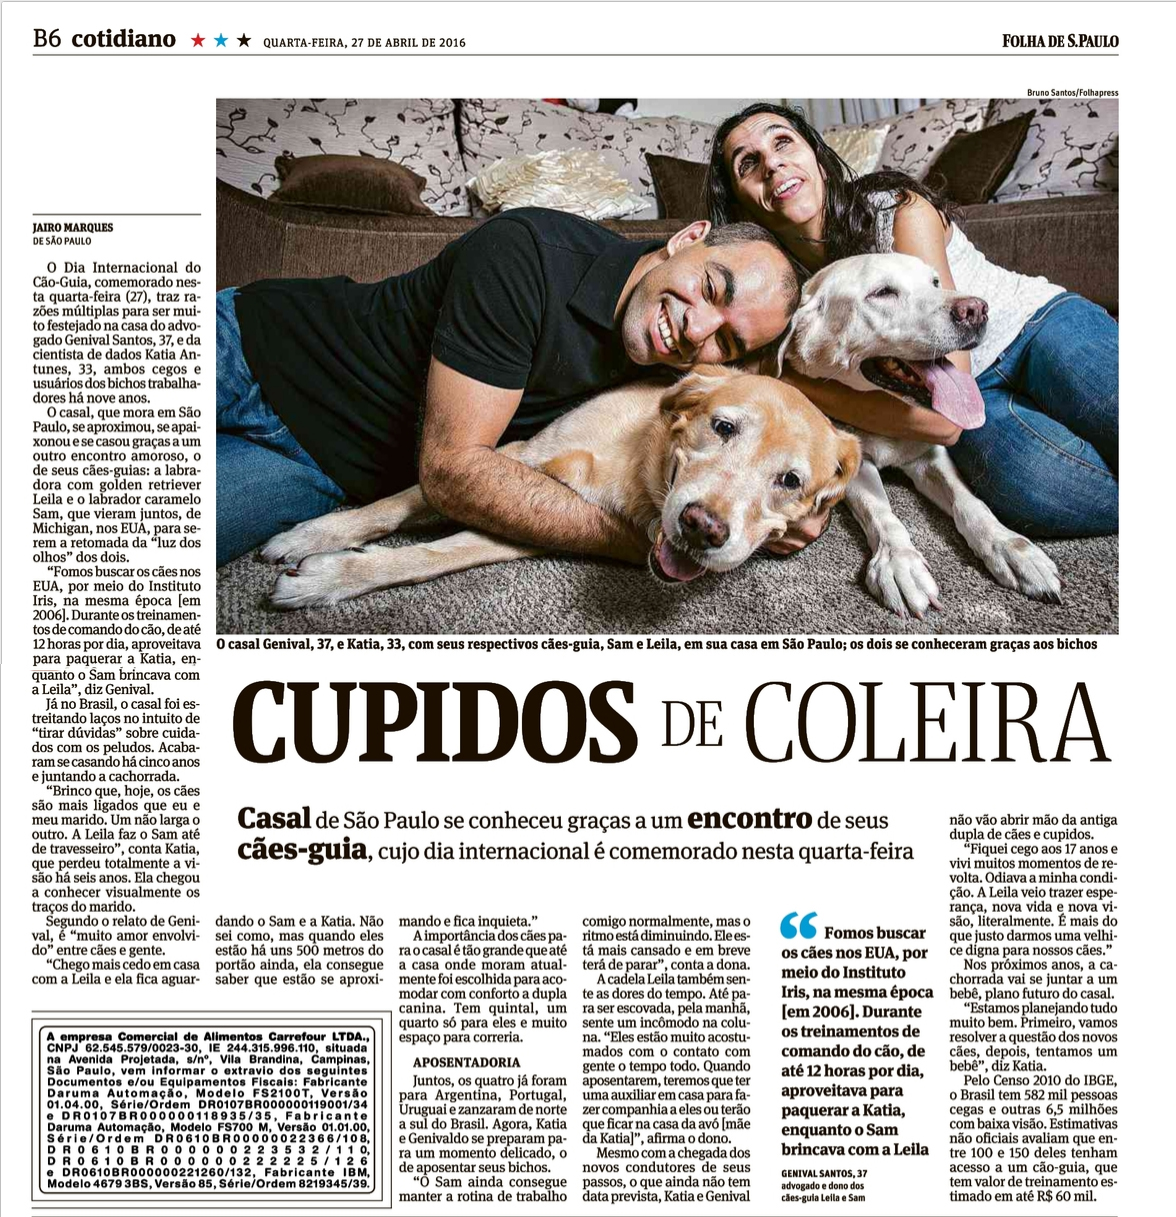 Imagem 2016 - Cupidos de Coleira